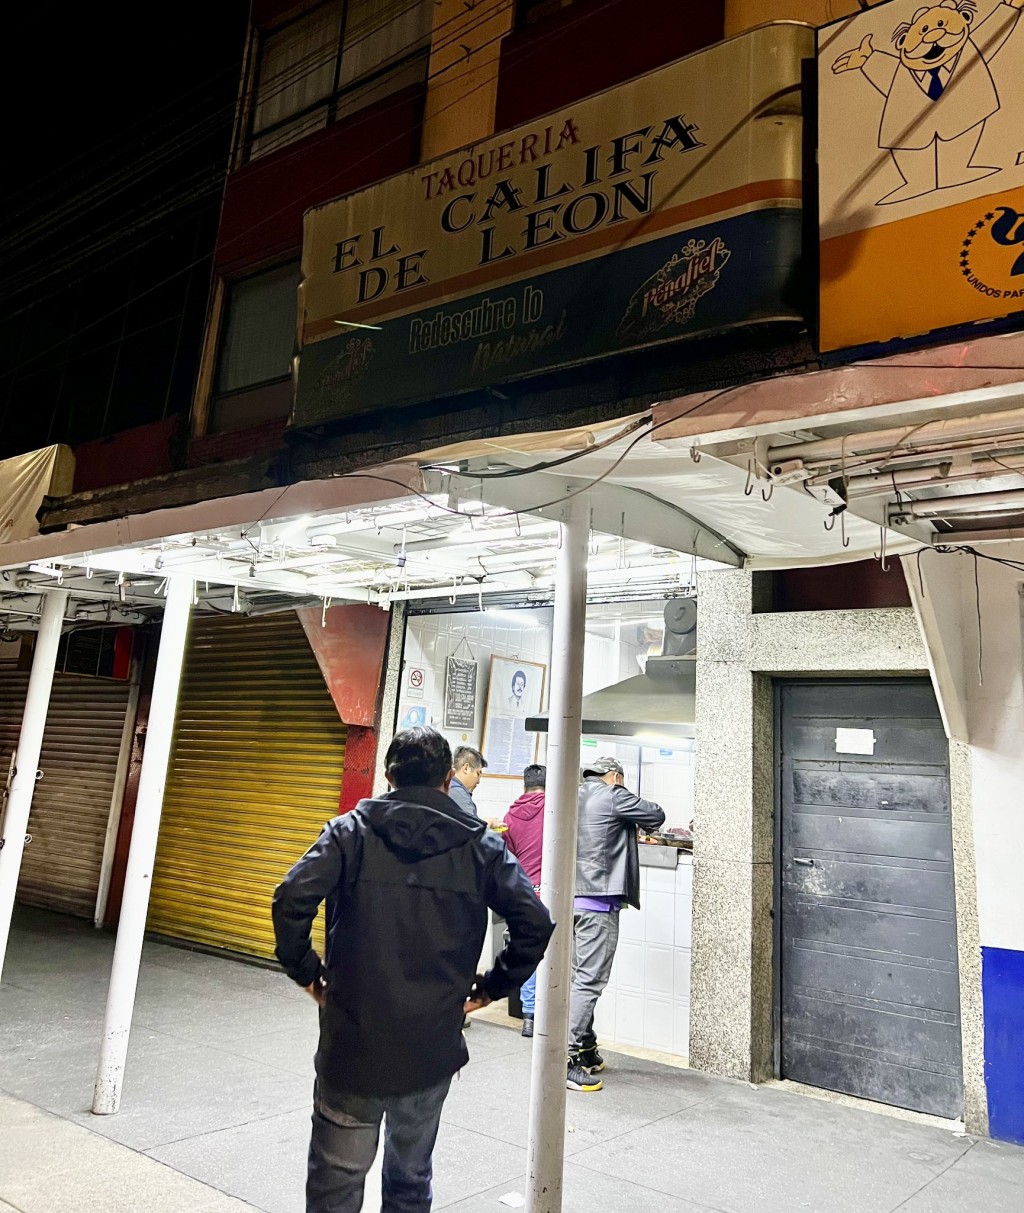 Tacos El Califa de León店铺门面。 X